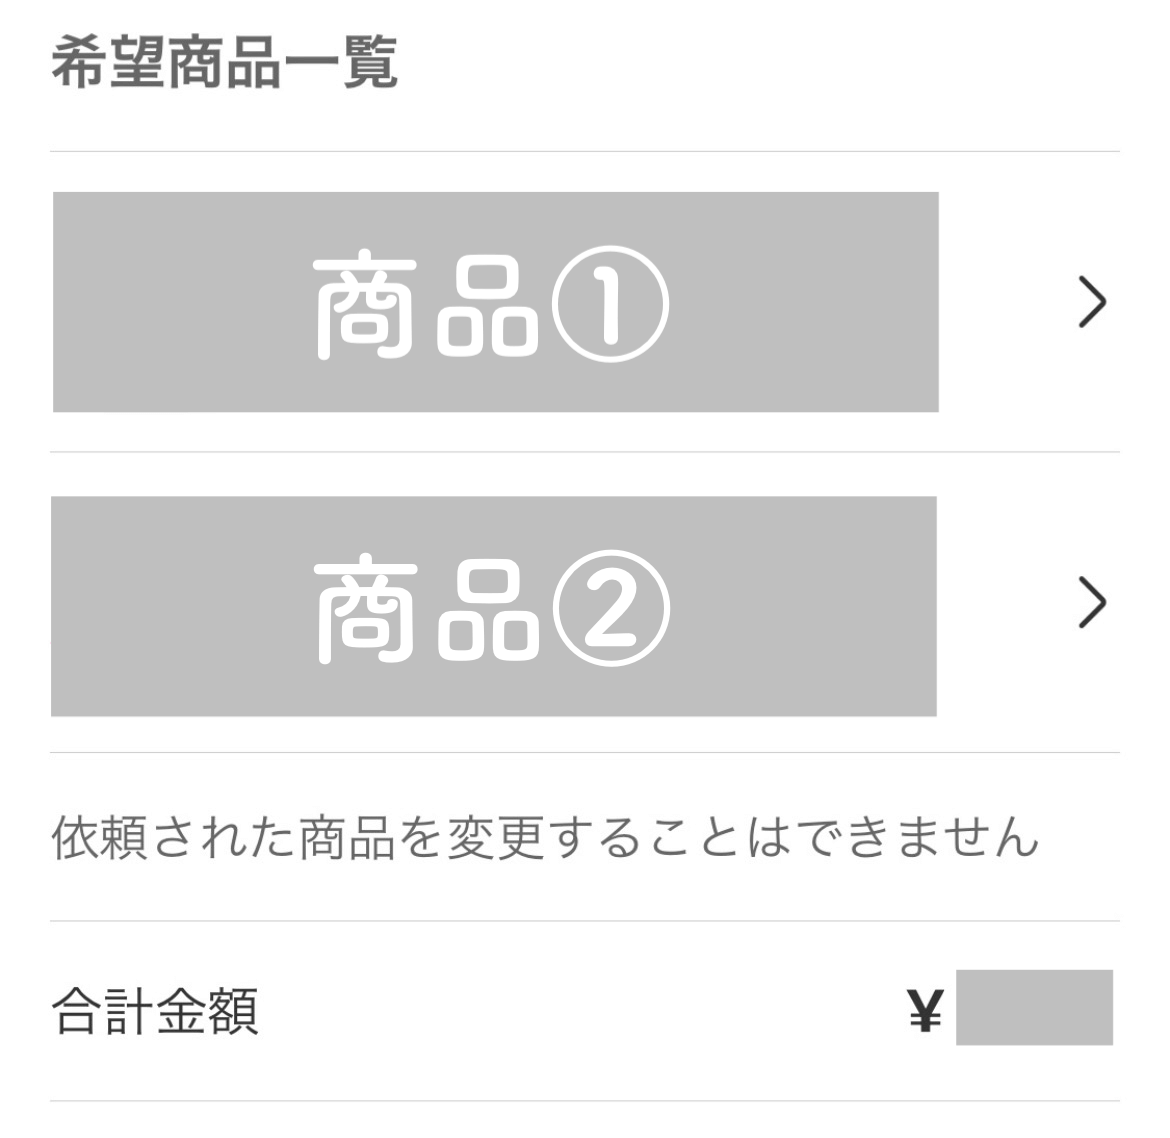 希望商品一覧
商品①
商品②

依頼された商品を変更することはできません
合計金額　¥2,000